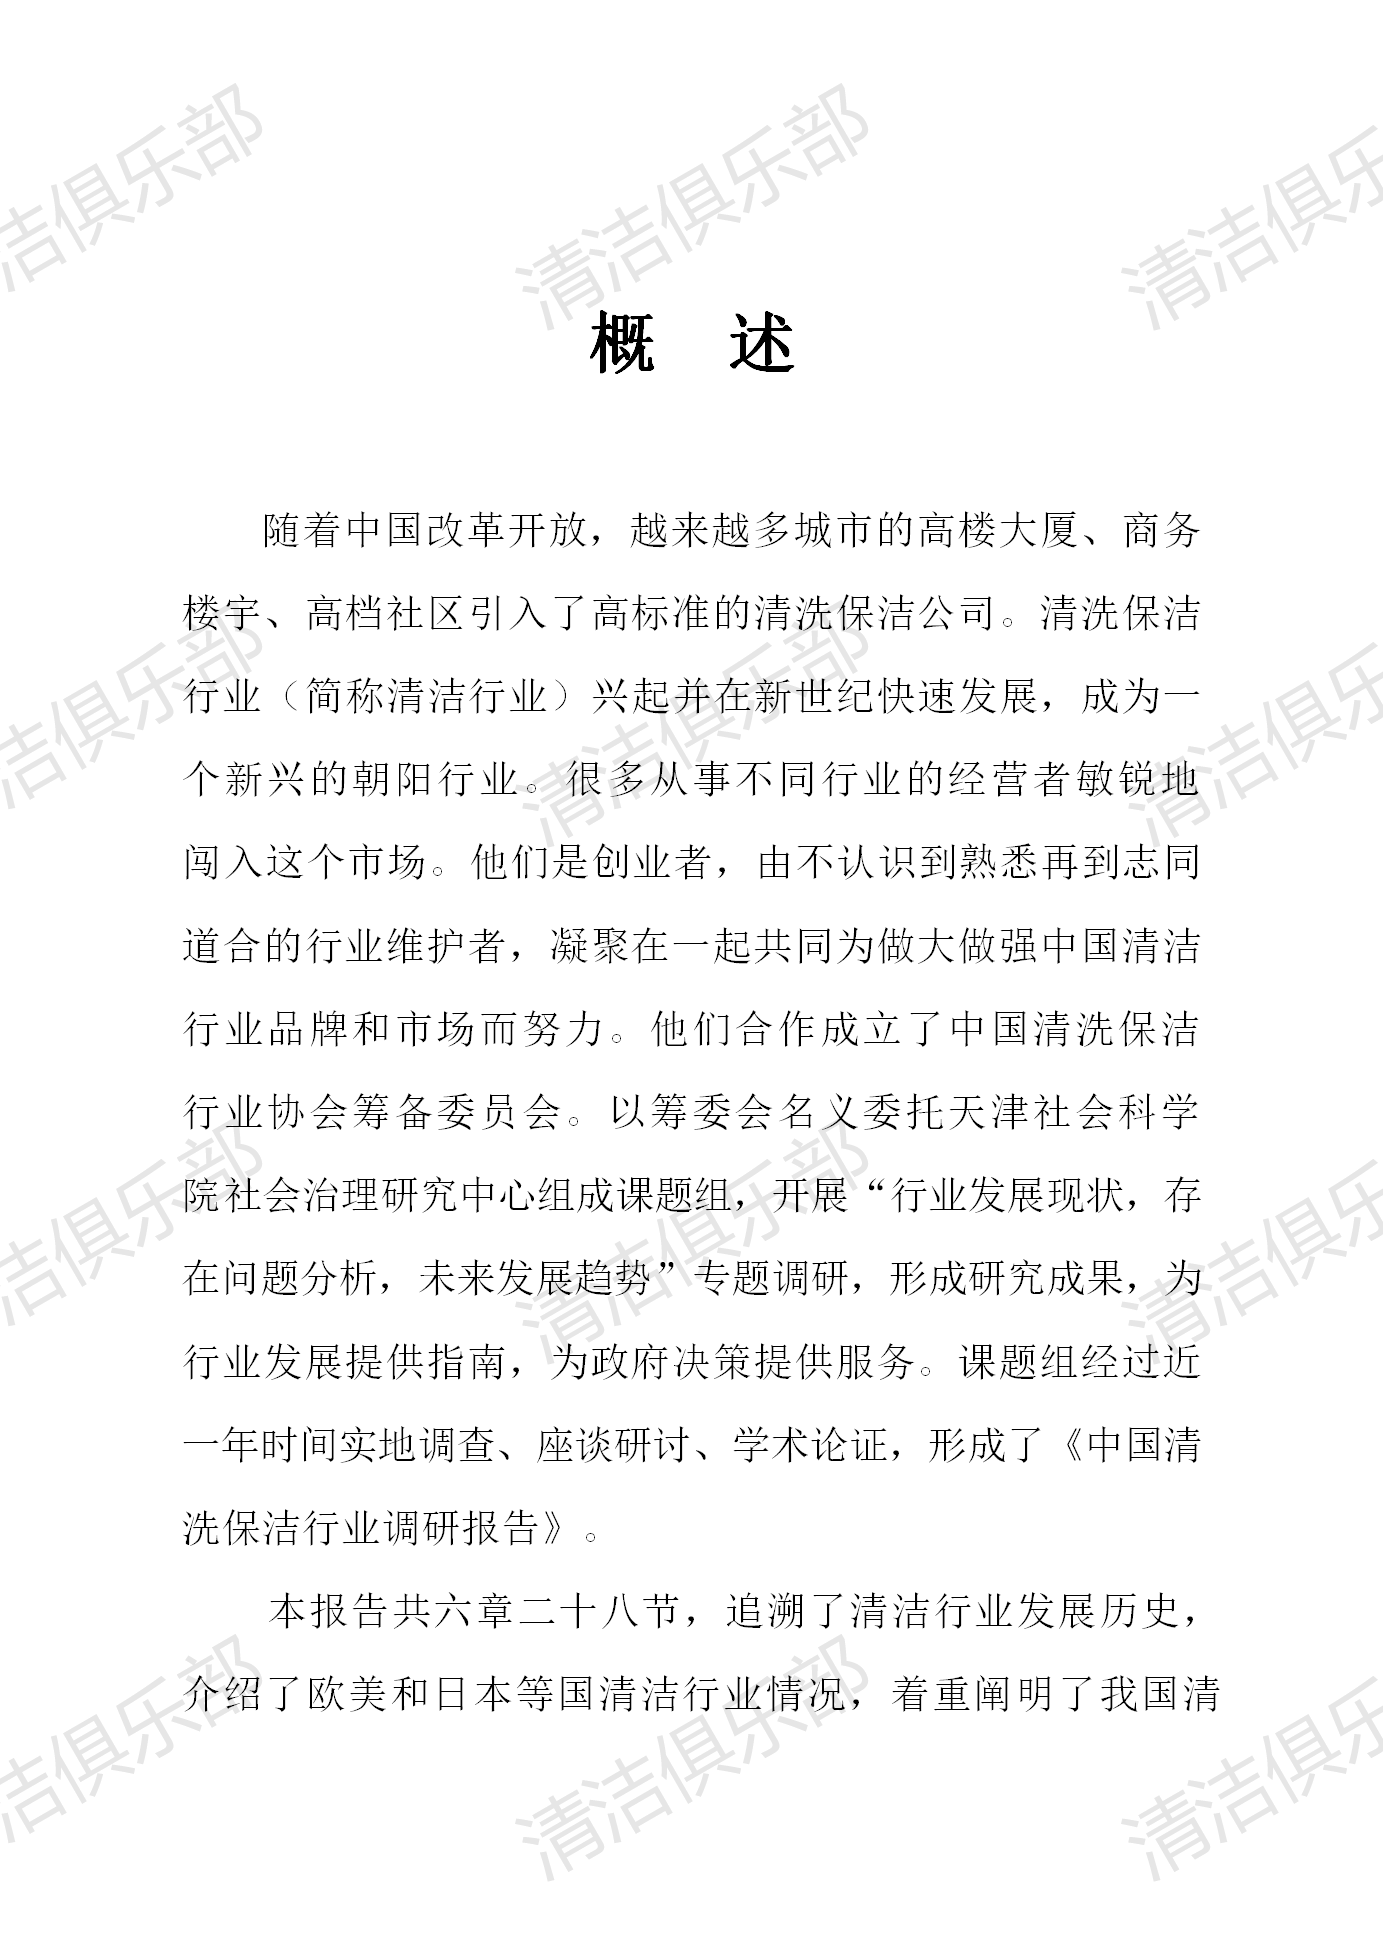 中国清洗保洁行业调研报告排版_05.png